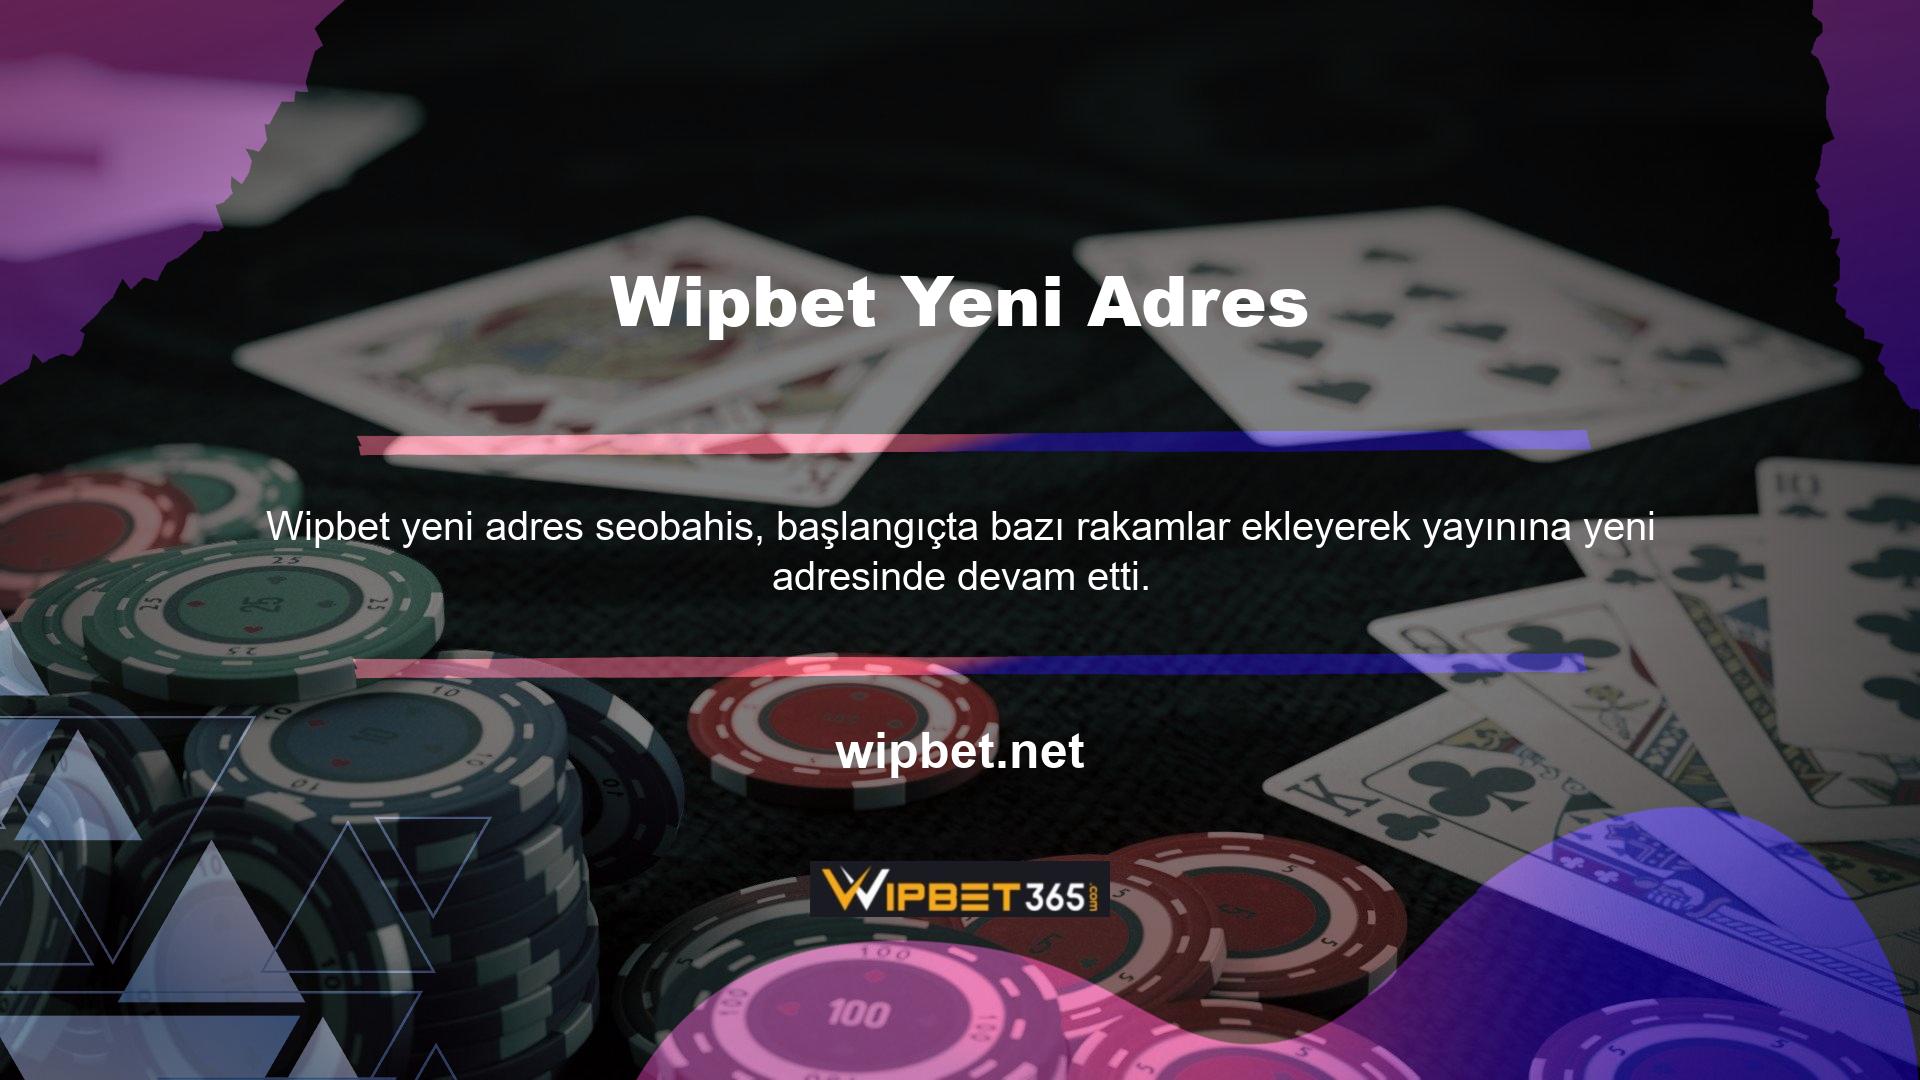 Wipbet yeni giriş adresi Wipbet'tir